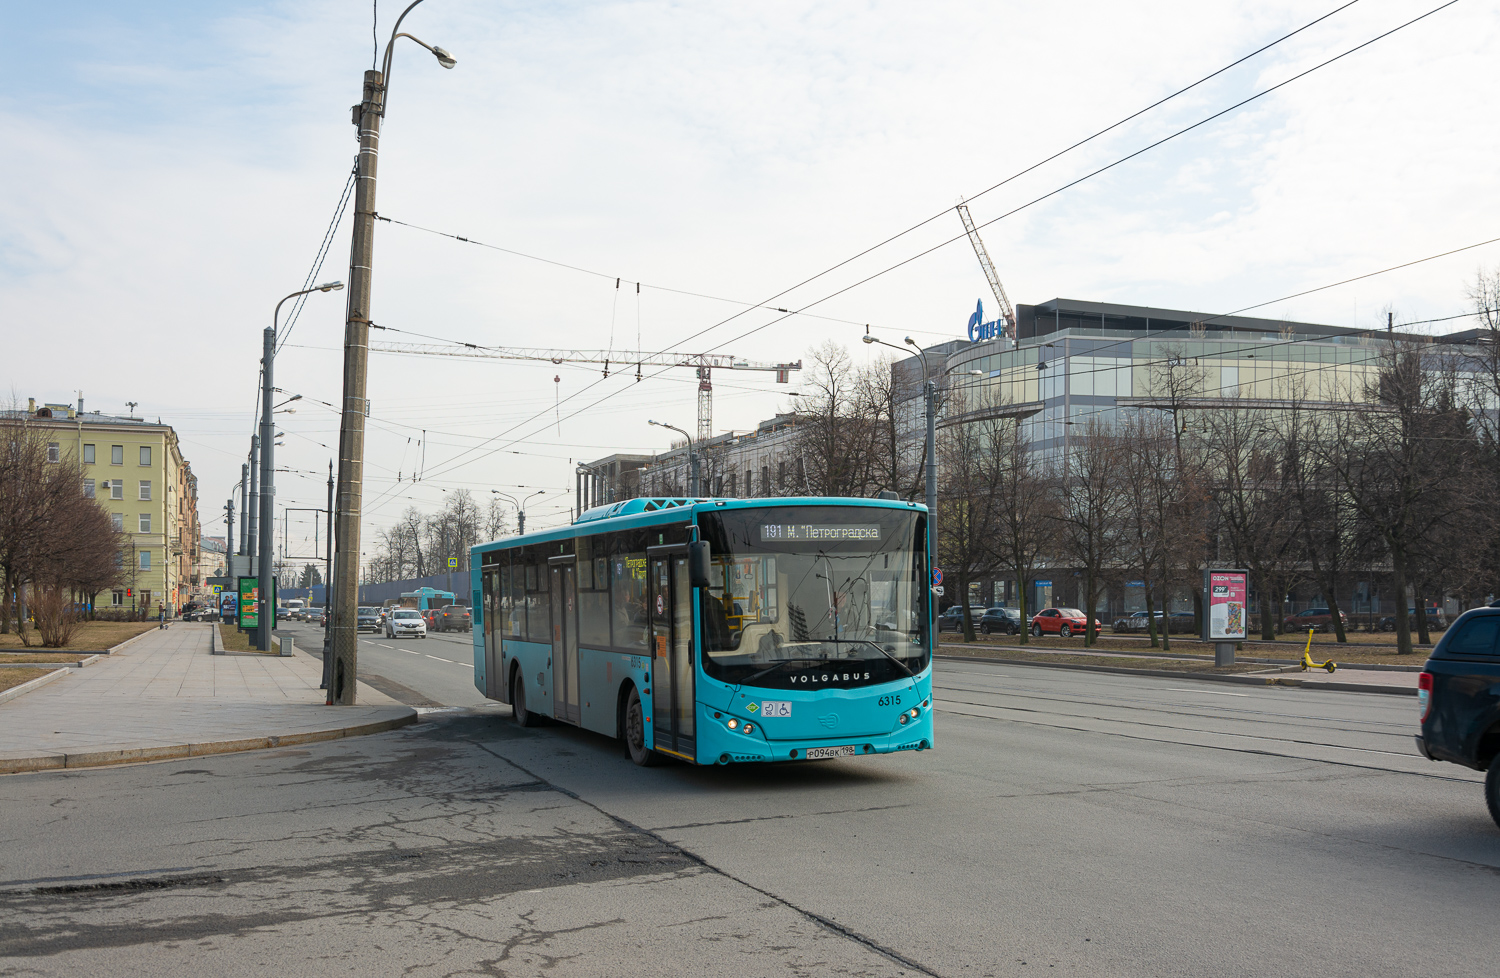 Saint-Pétersbourg, Volgabus-5270.G4 (LNG) # 6315